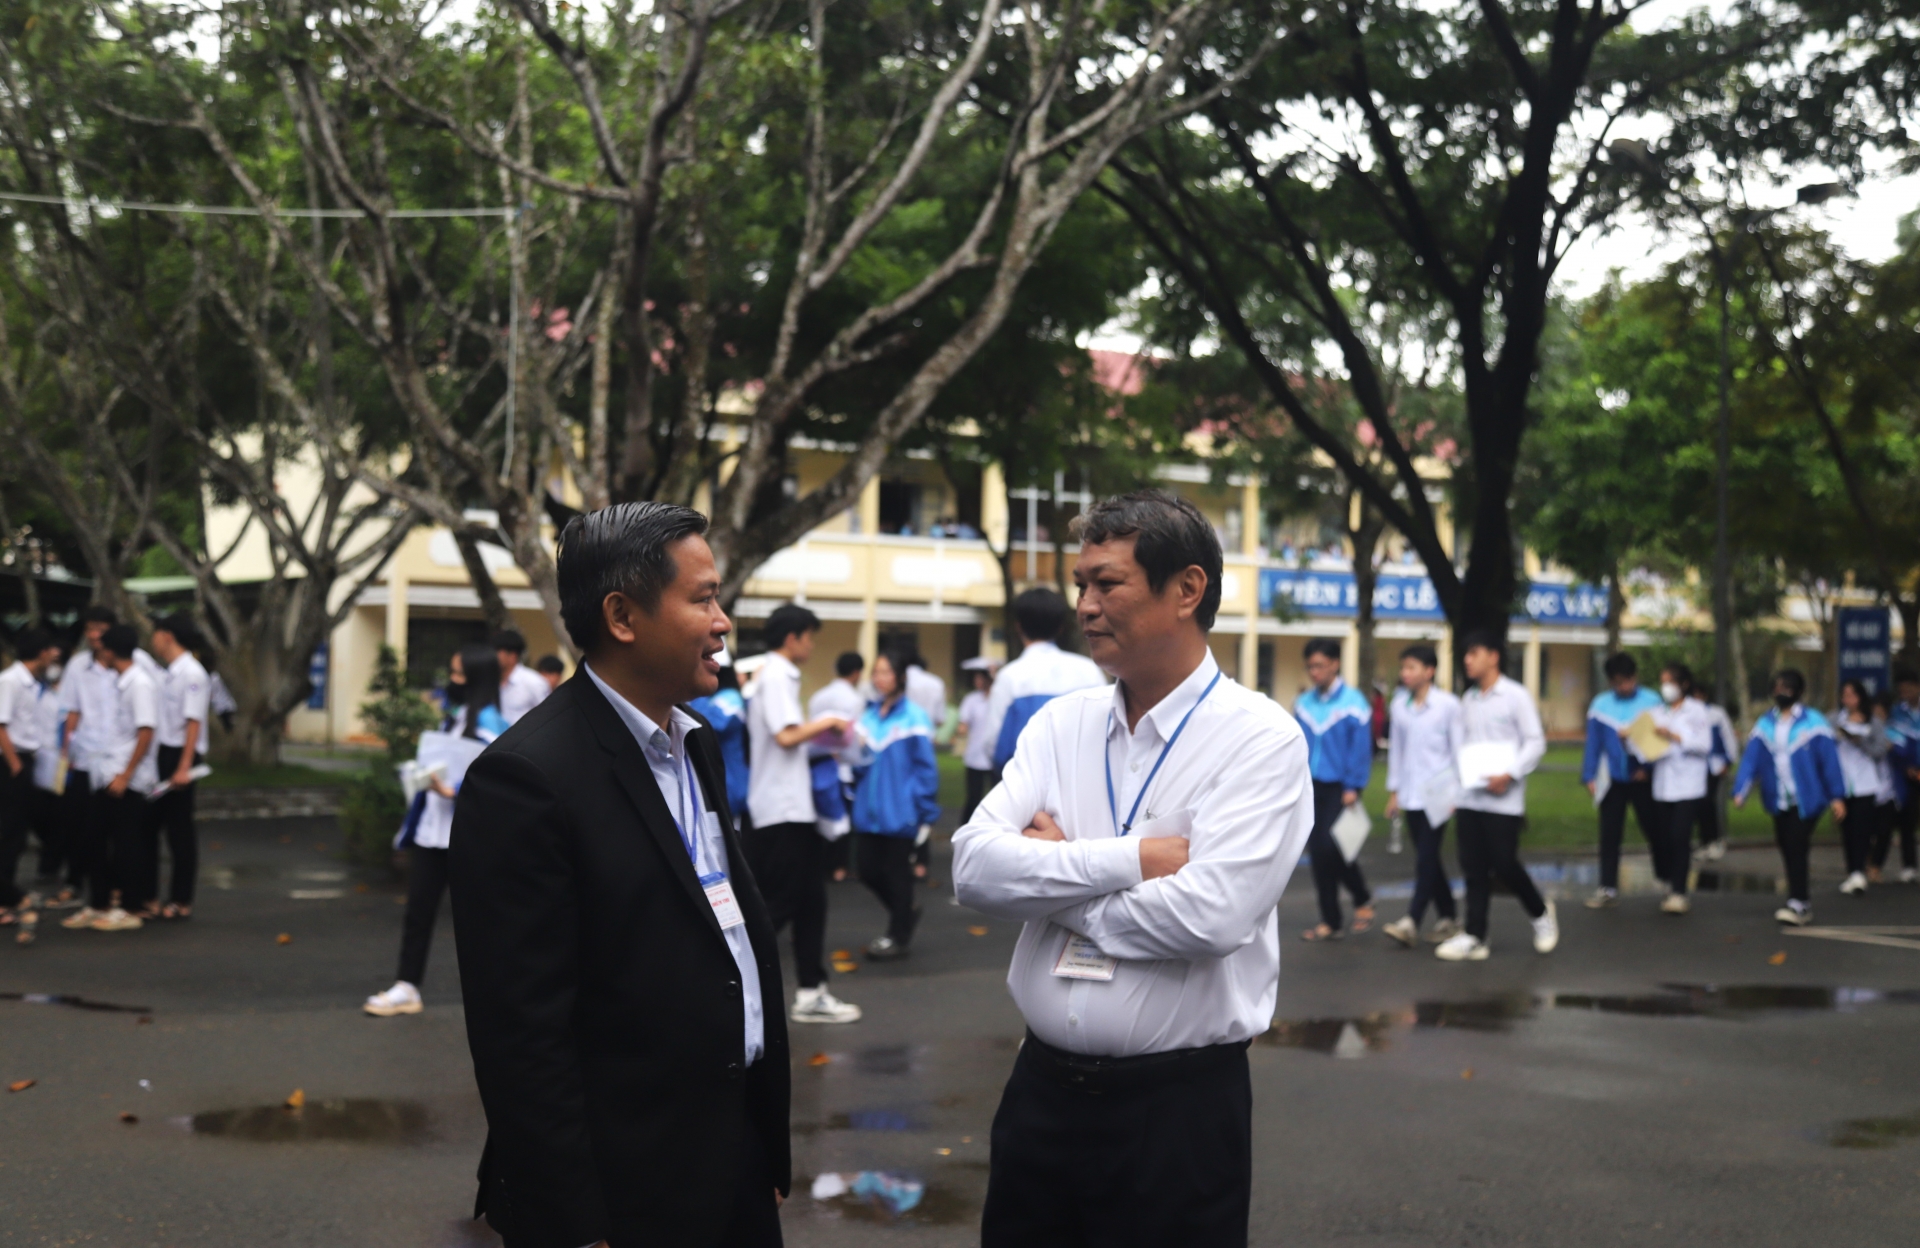 Phó Chủ tịch UBND TP Bảo Lộc Phùng Ngọc Hạp có mặt tại điểm thi trường THPT Nguyễn Du trao đổi với Hội đồng thi về trường hợp 2 thí sinh bị tai nạn giao thông